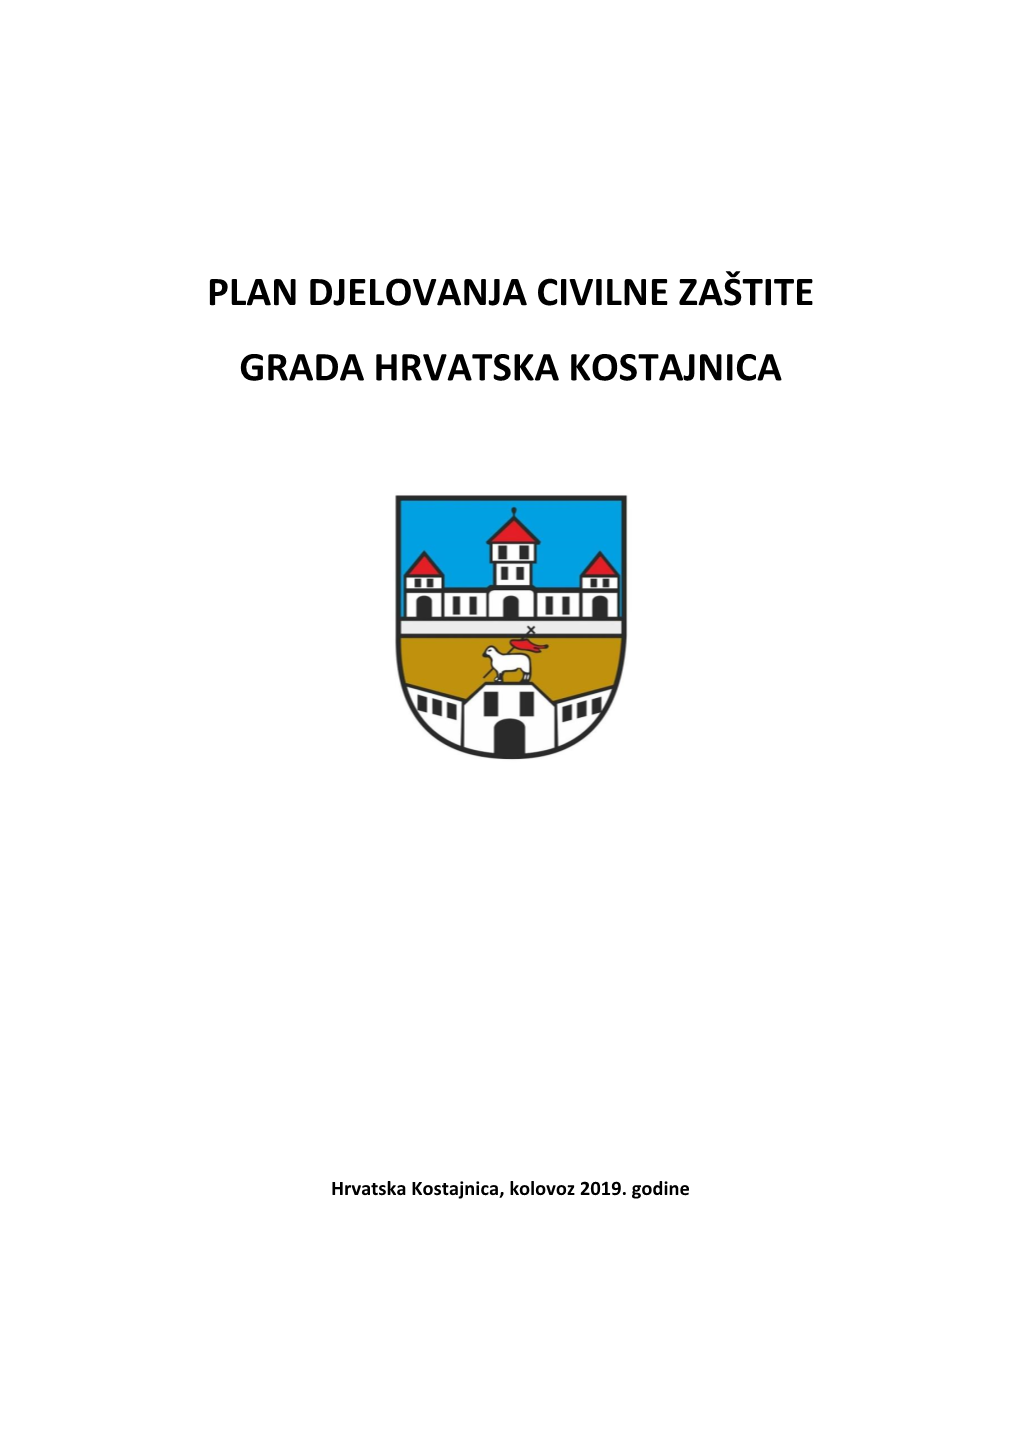 Plan Djelovanja Civilne Zaštite Grada Hrvatska Kostajnica